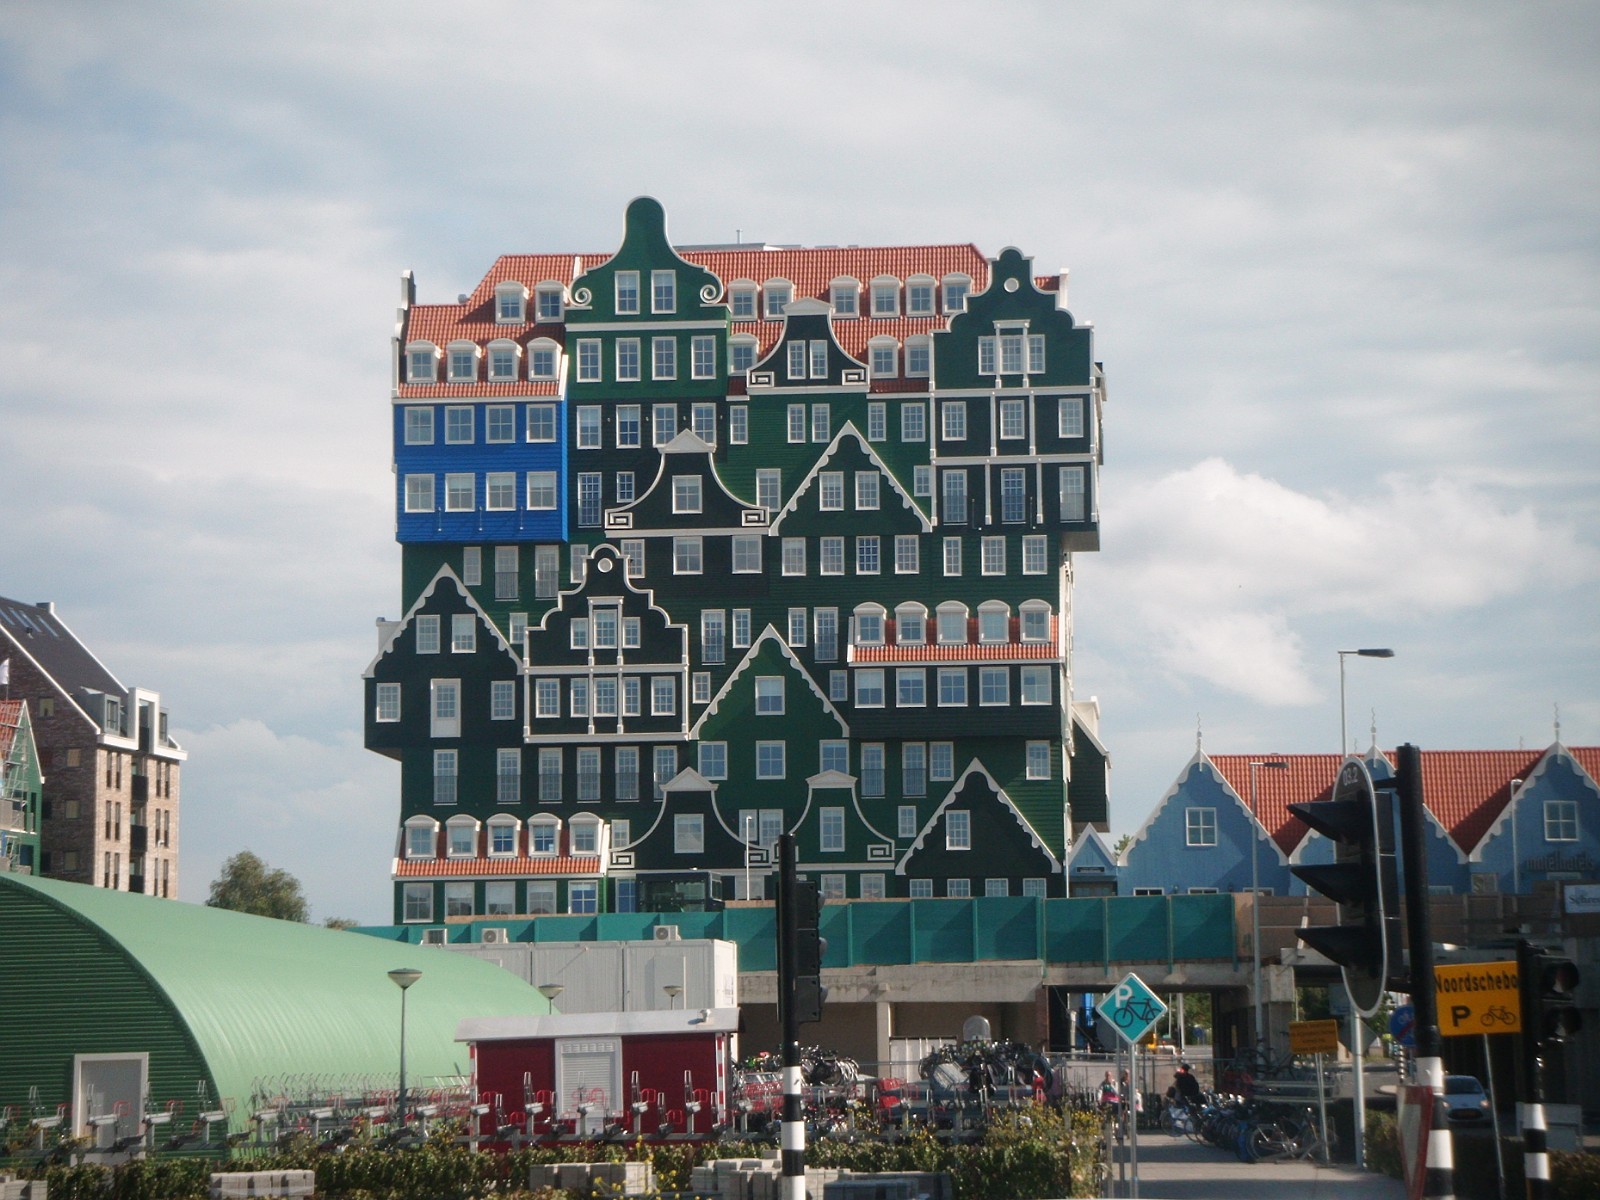 84. Pomysłowa fasada budynku w mieście Zaandam, w Niderlandach.